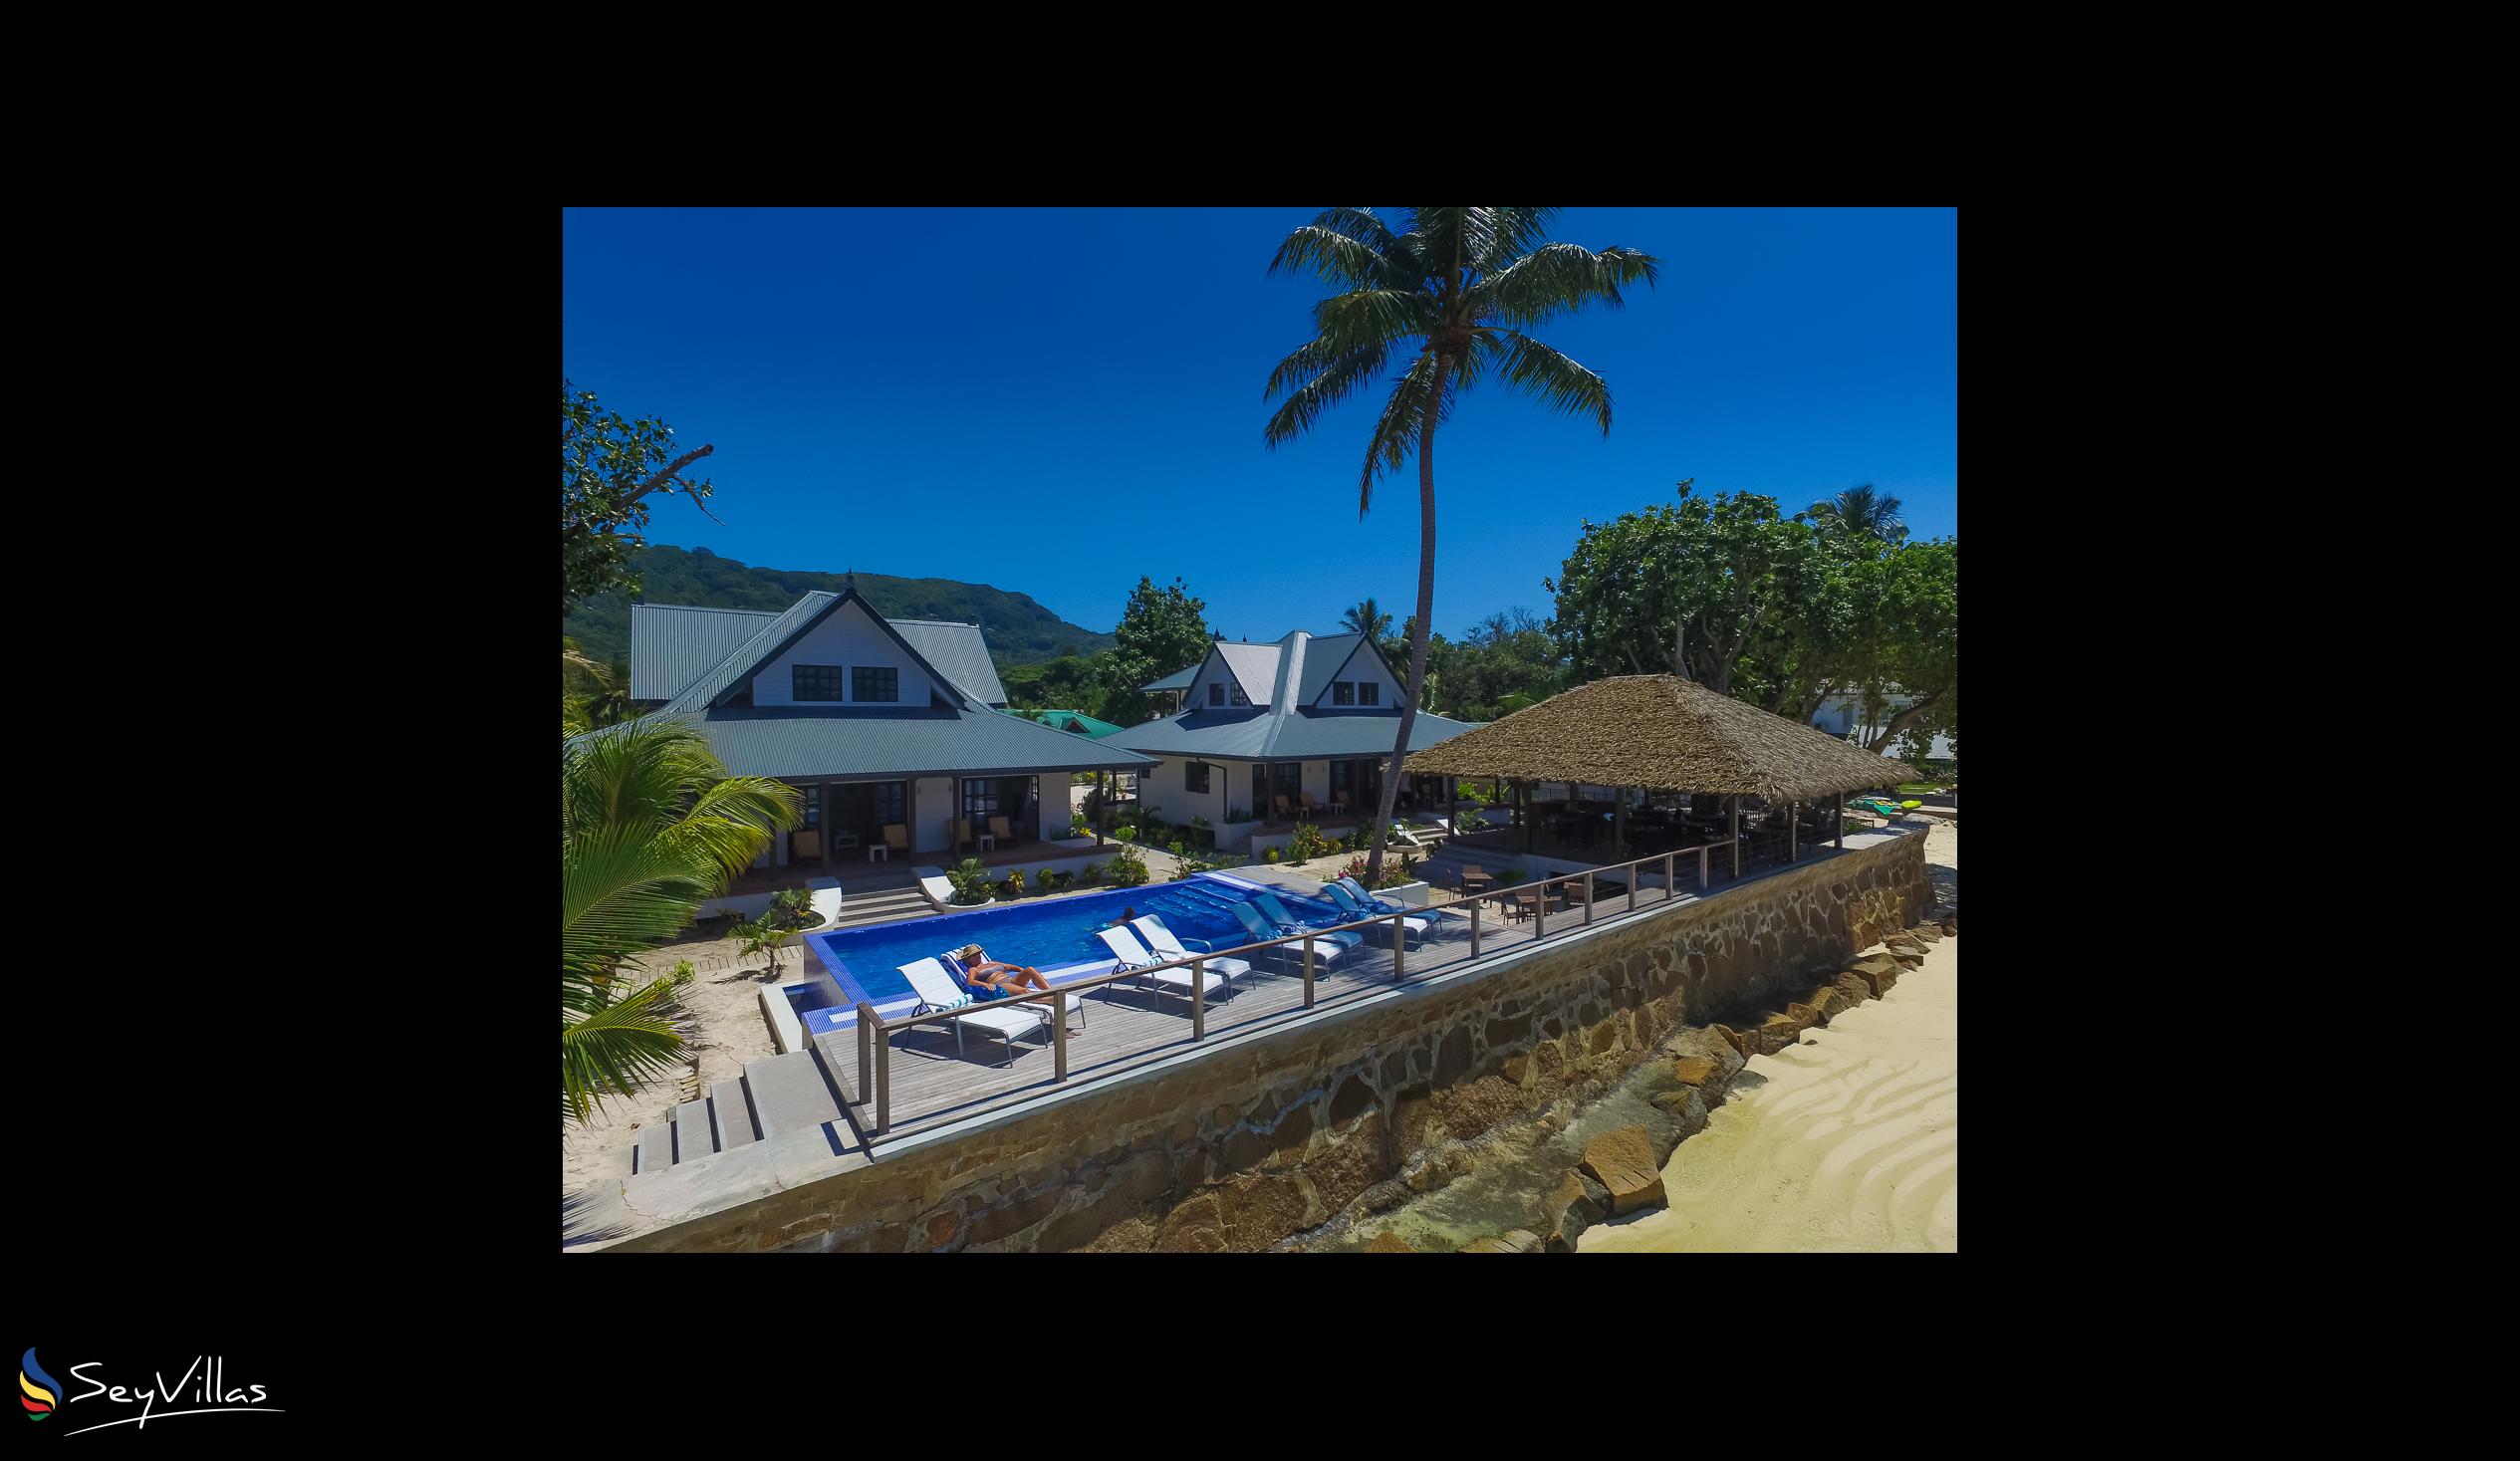 Foto 55: Le Nautique Luxury Waterfront Hotel - Extérieur - La Digue (Seychelles)